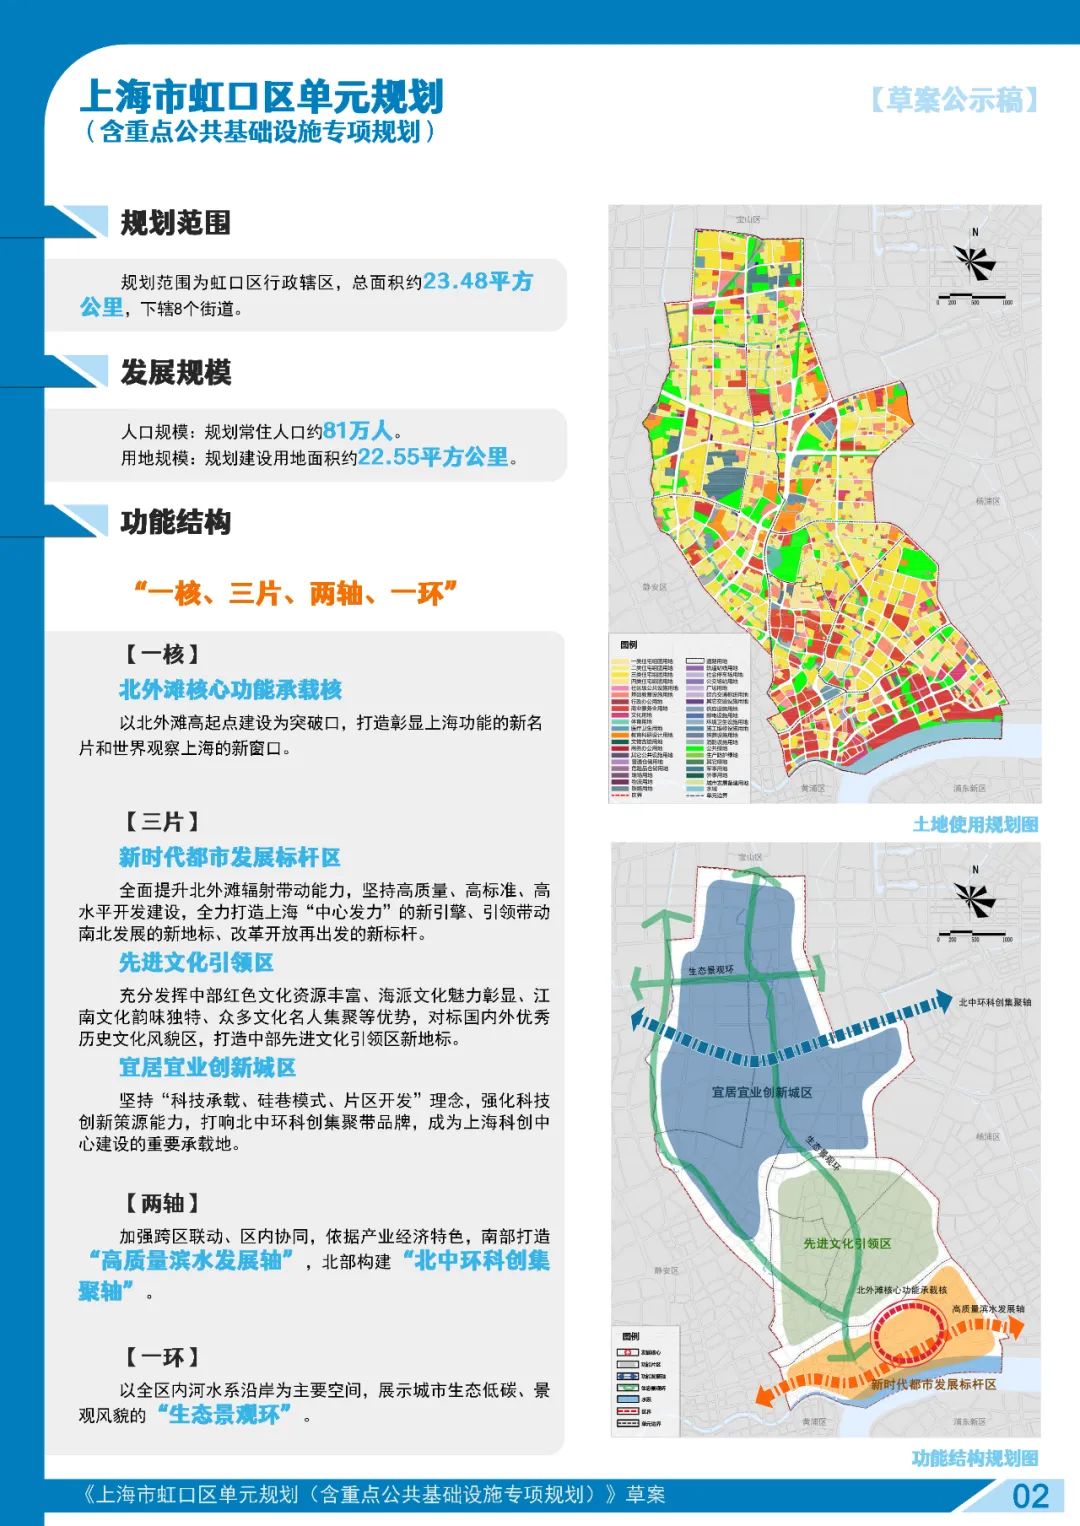 2035虹口区规划草案公示,规划常住人口约81万人